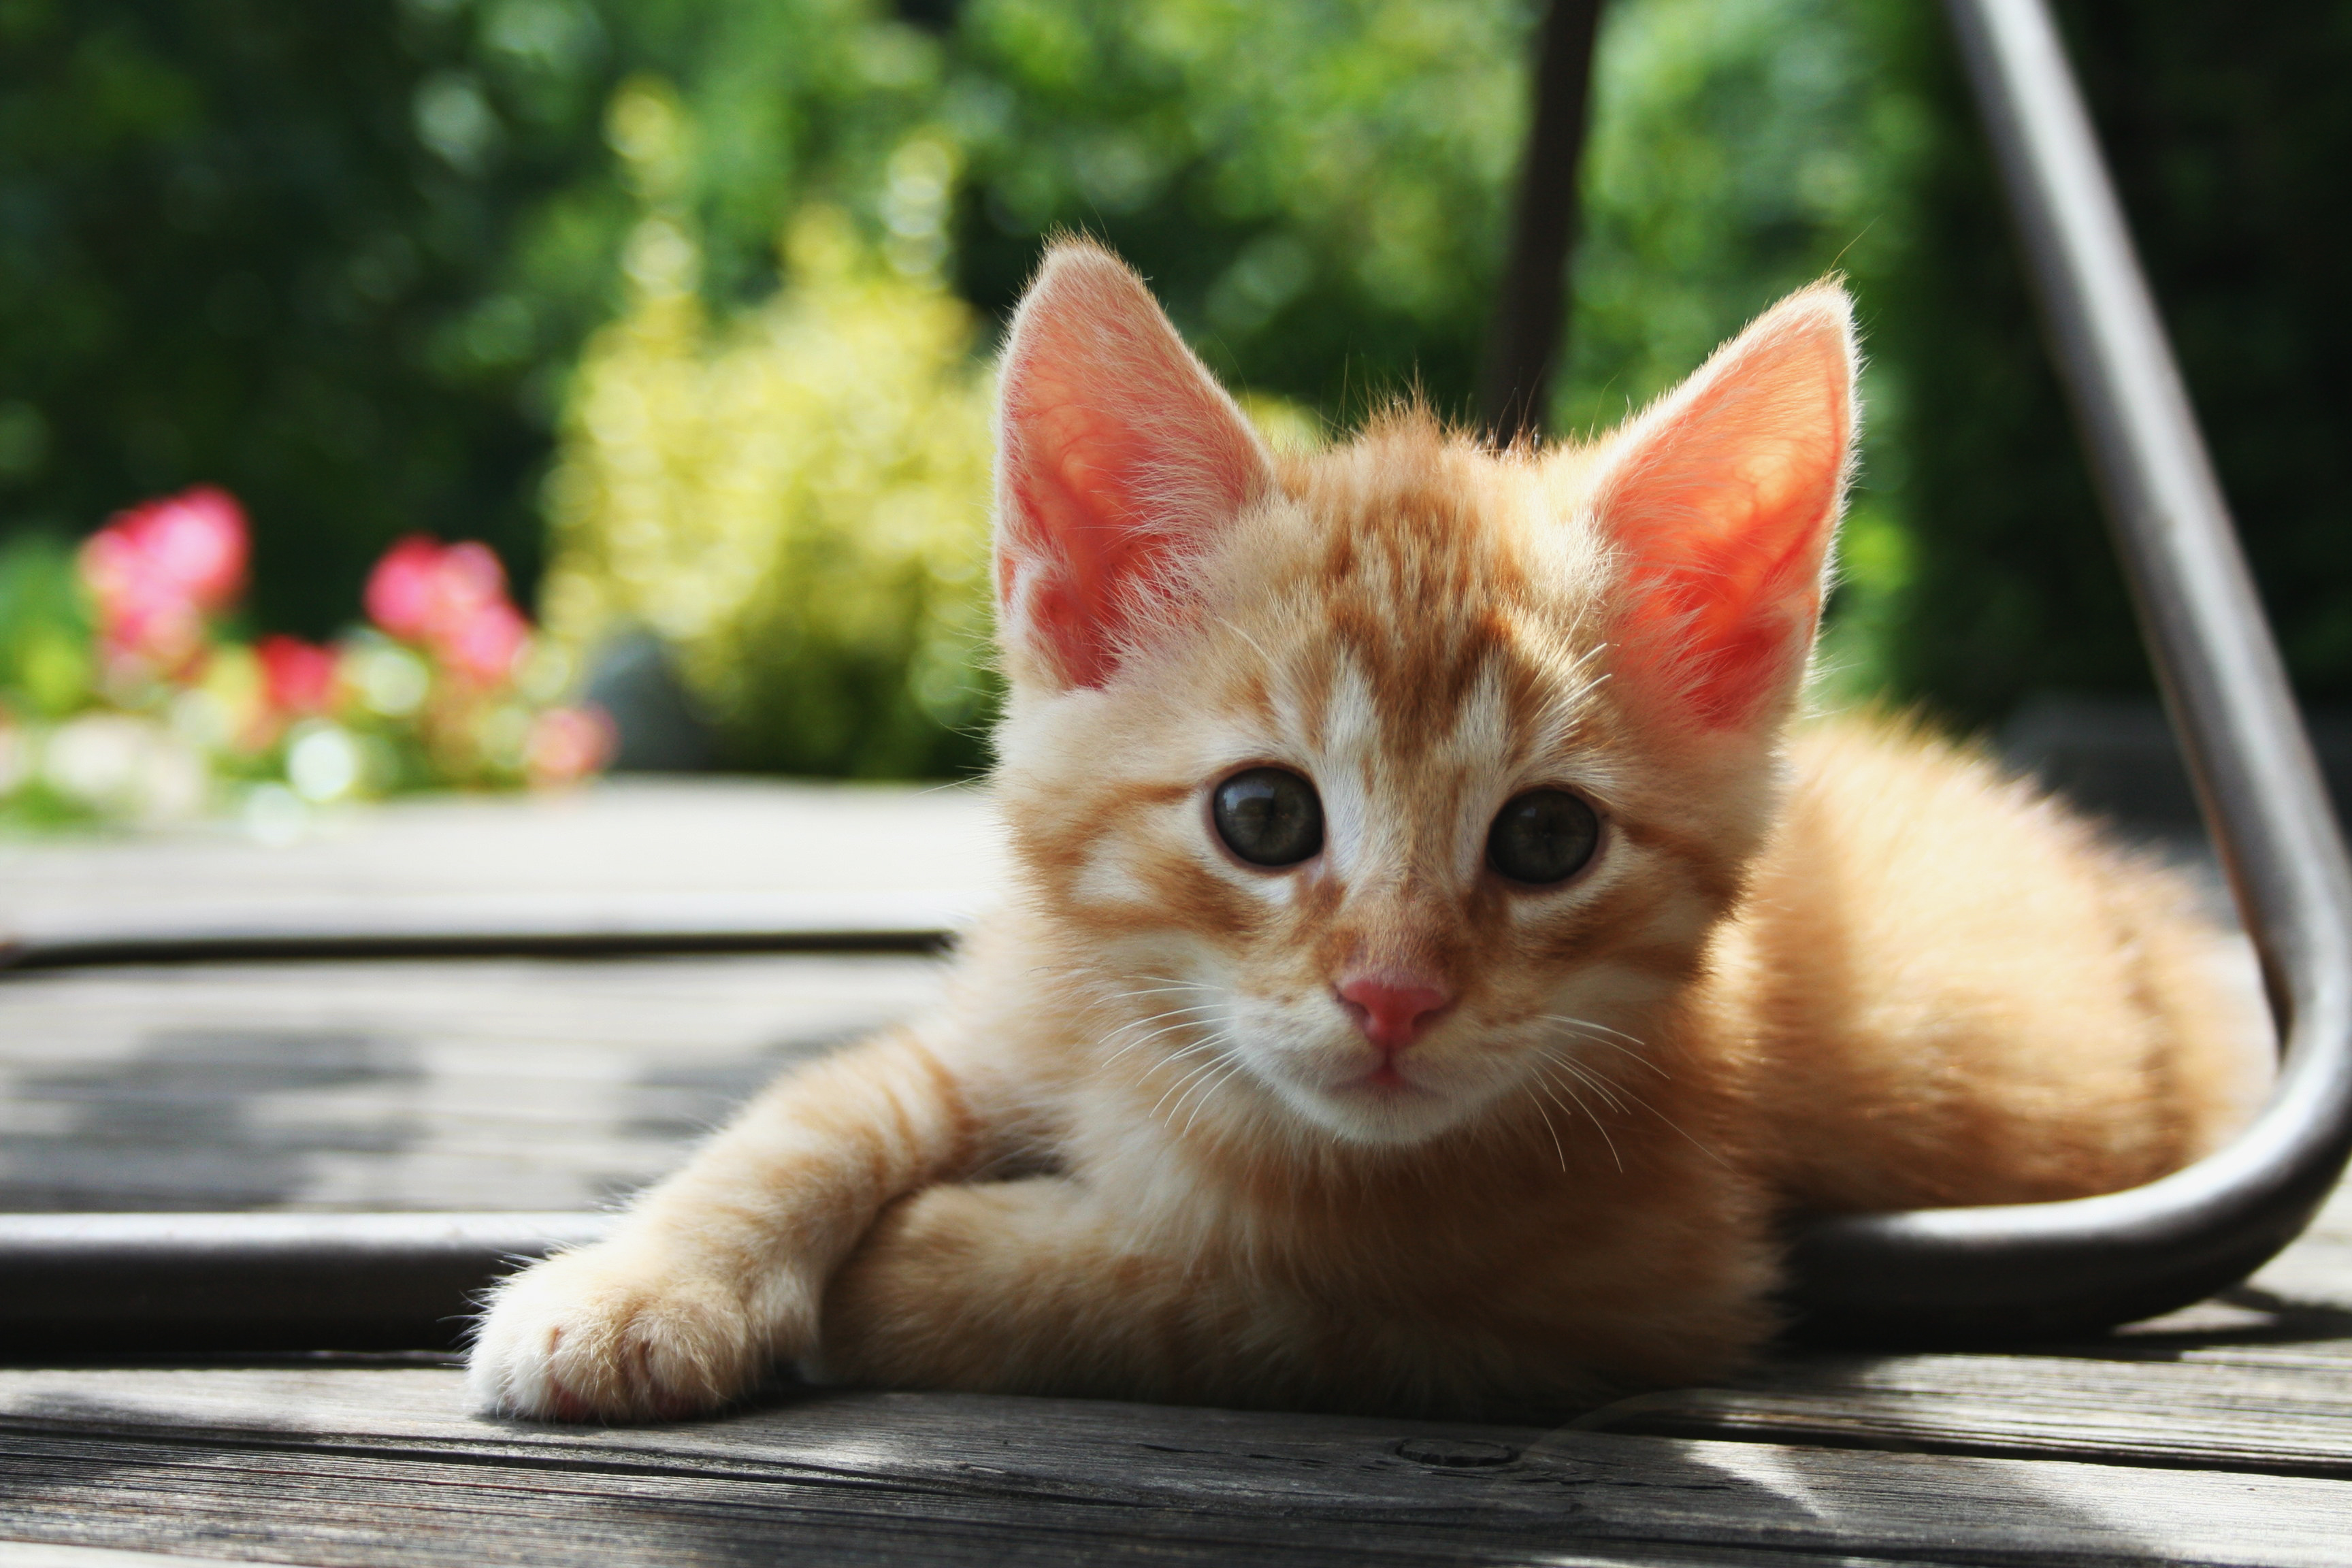 Kitten - Wikipedia